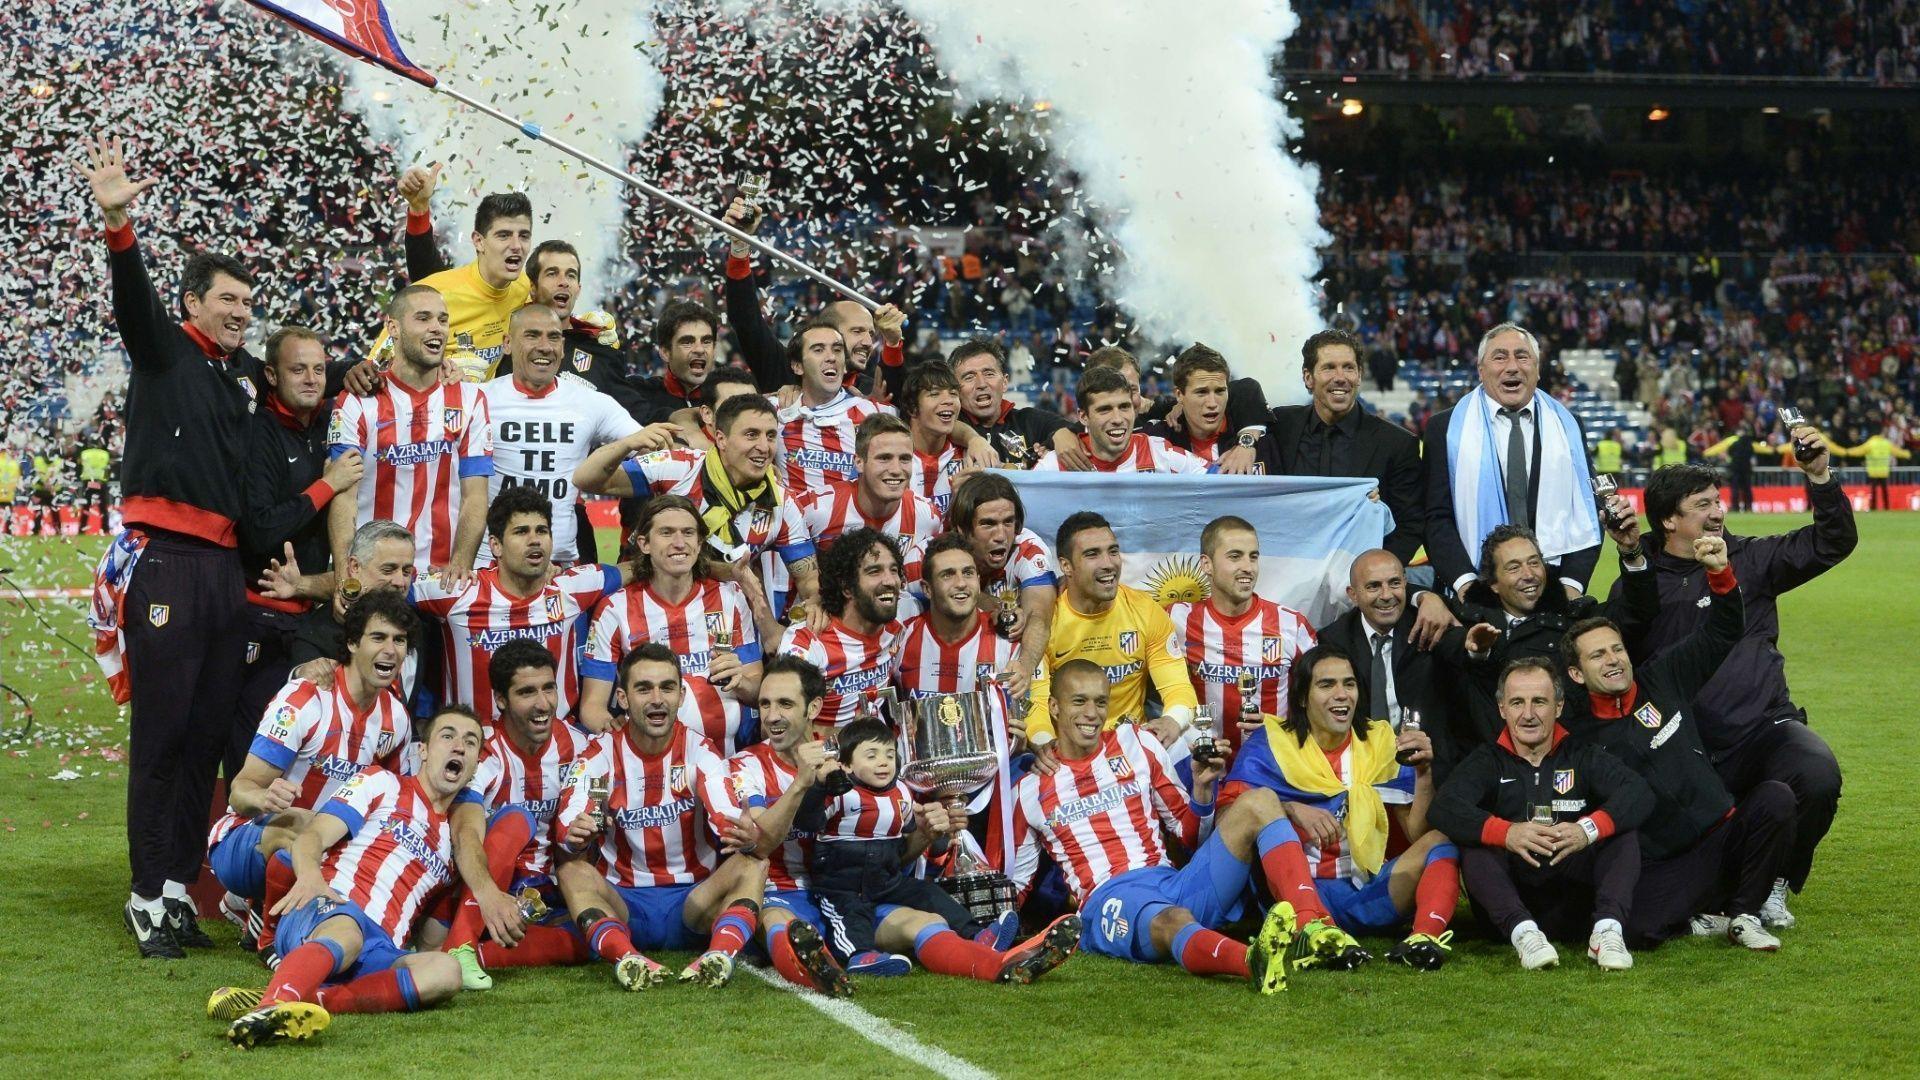 Atletico Madrid HD Wallpaper 177261 Image. soccerwallpics